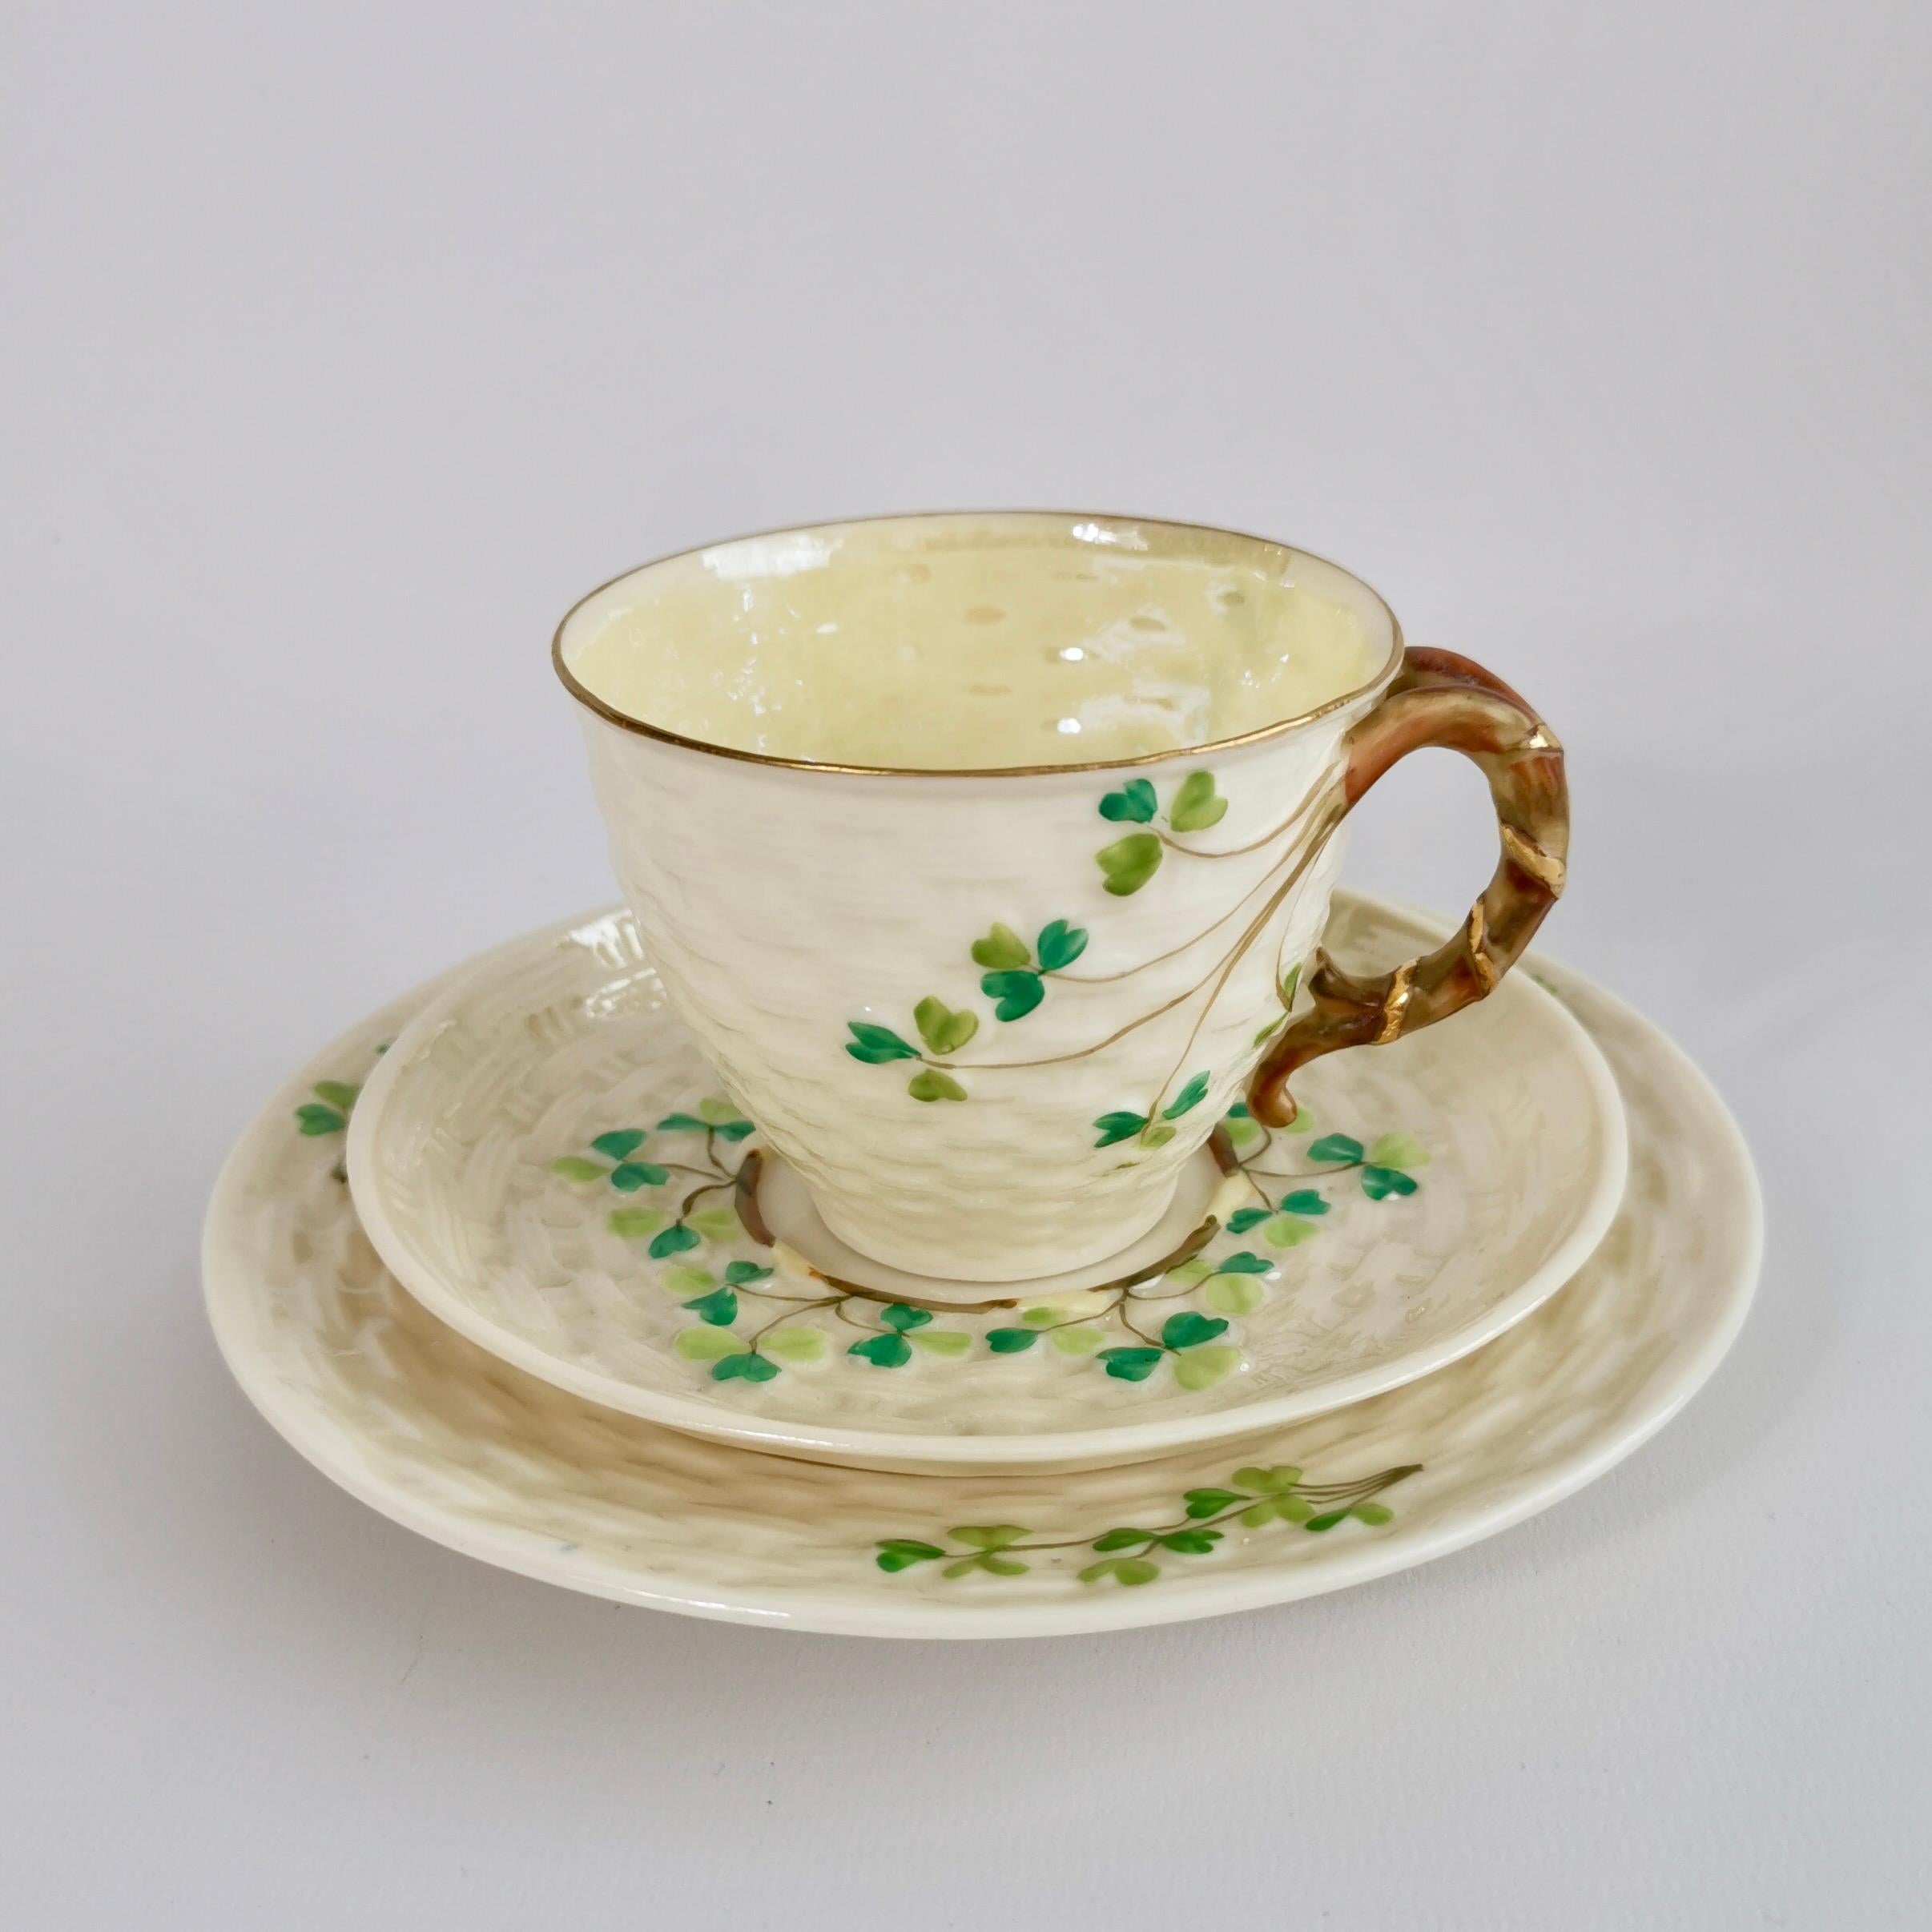 Il s'agit d'un très charmant trio de tasses à café fabriqué par Belleek dans le design Shamrock, composé d'une tasse à café, d'une soucoupe et d'une petite assiette à gâteau. Il possède la 2e marque noire, qui a été utilisée entre 1891 et 1926.